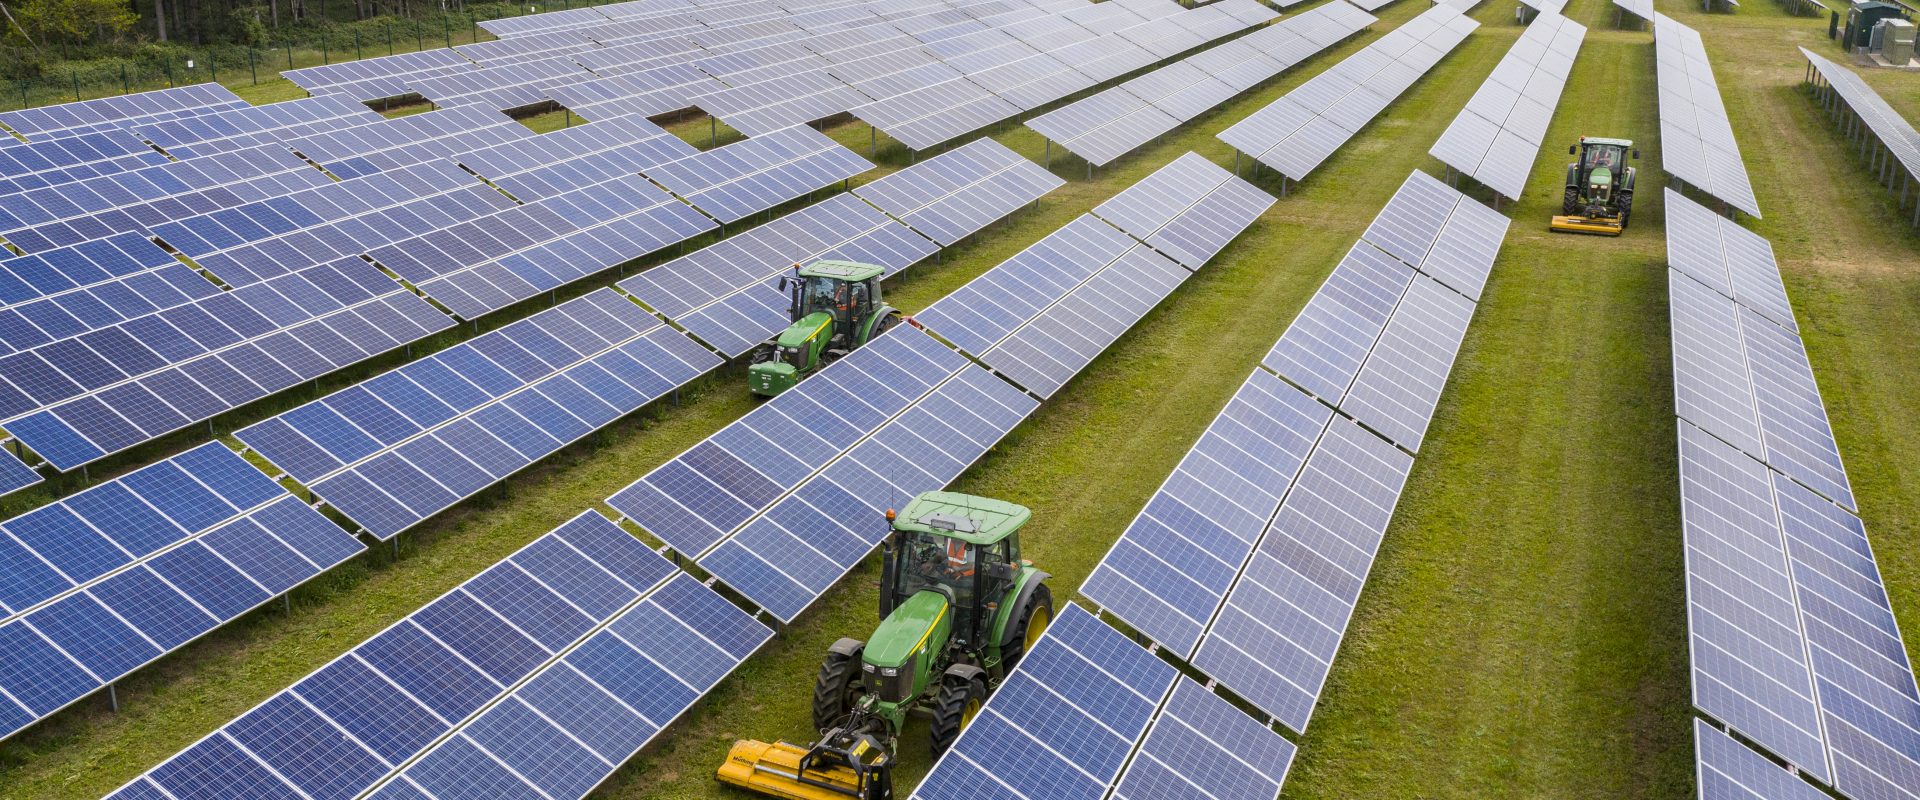 tractors driving between solar panels